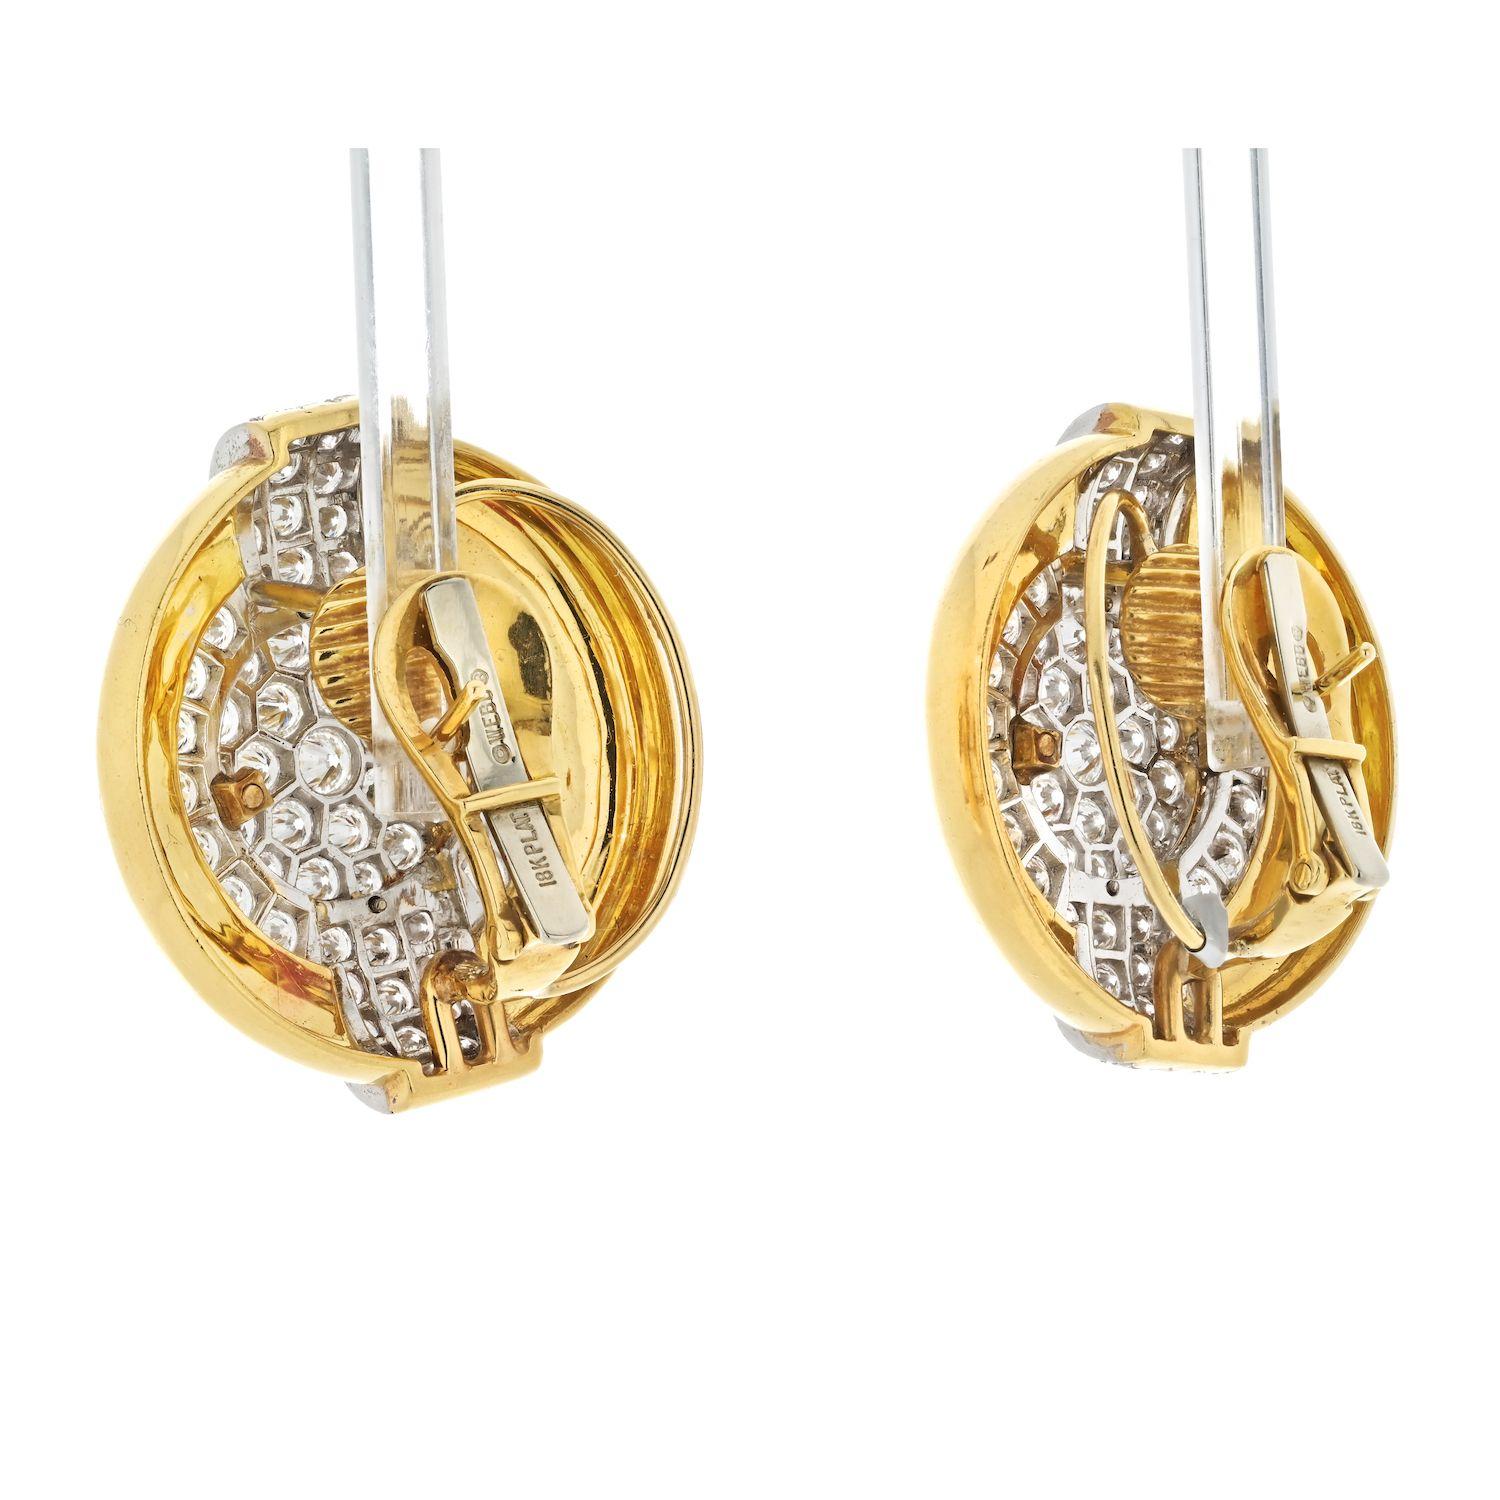 Les boucles d'oreilles à clip de David Webb, de style années 1970, composées de diamants ronds et brillants, sont un bijou éblouissant. Réalisées en or jaune 18 carats avec des diamants sertis en platine, ces boucles d'oreilles présentent un poids